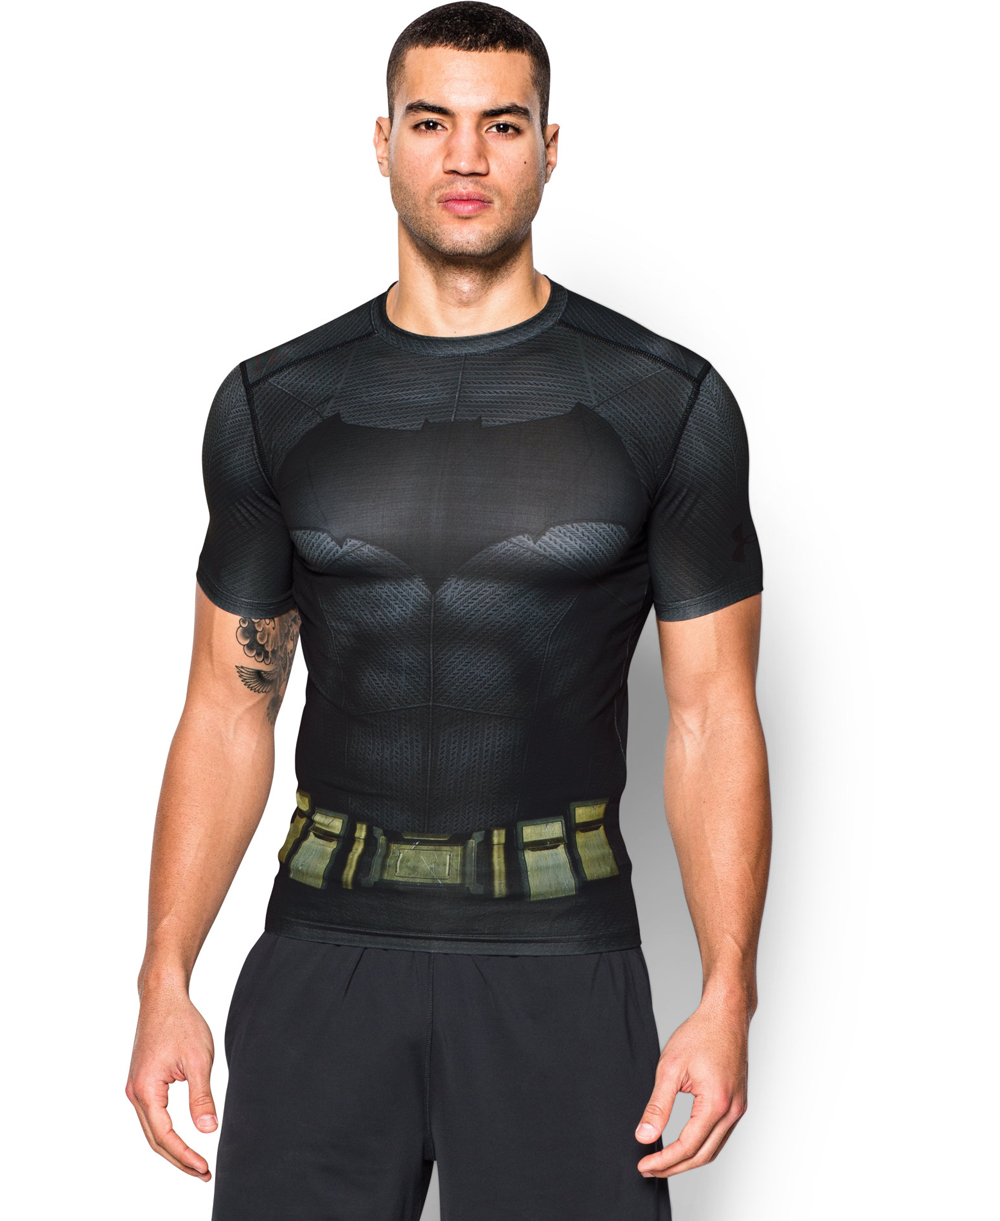 armour compression shirt